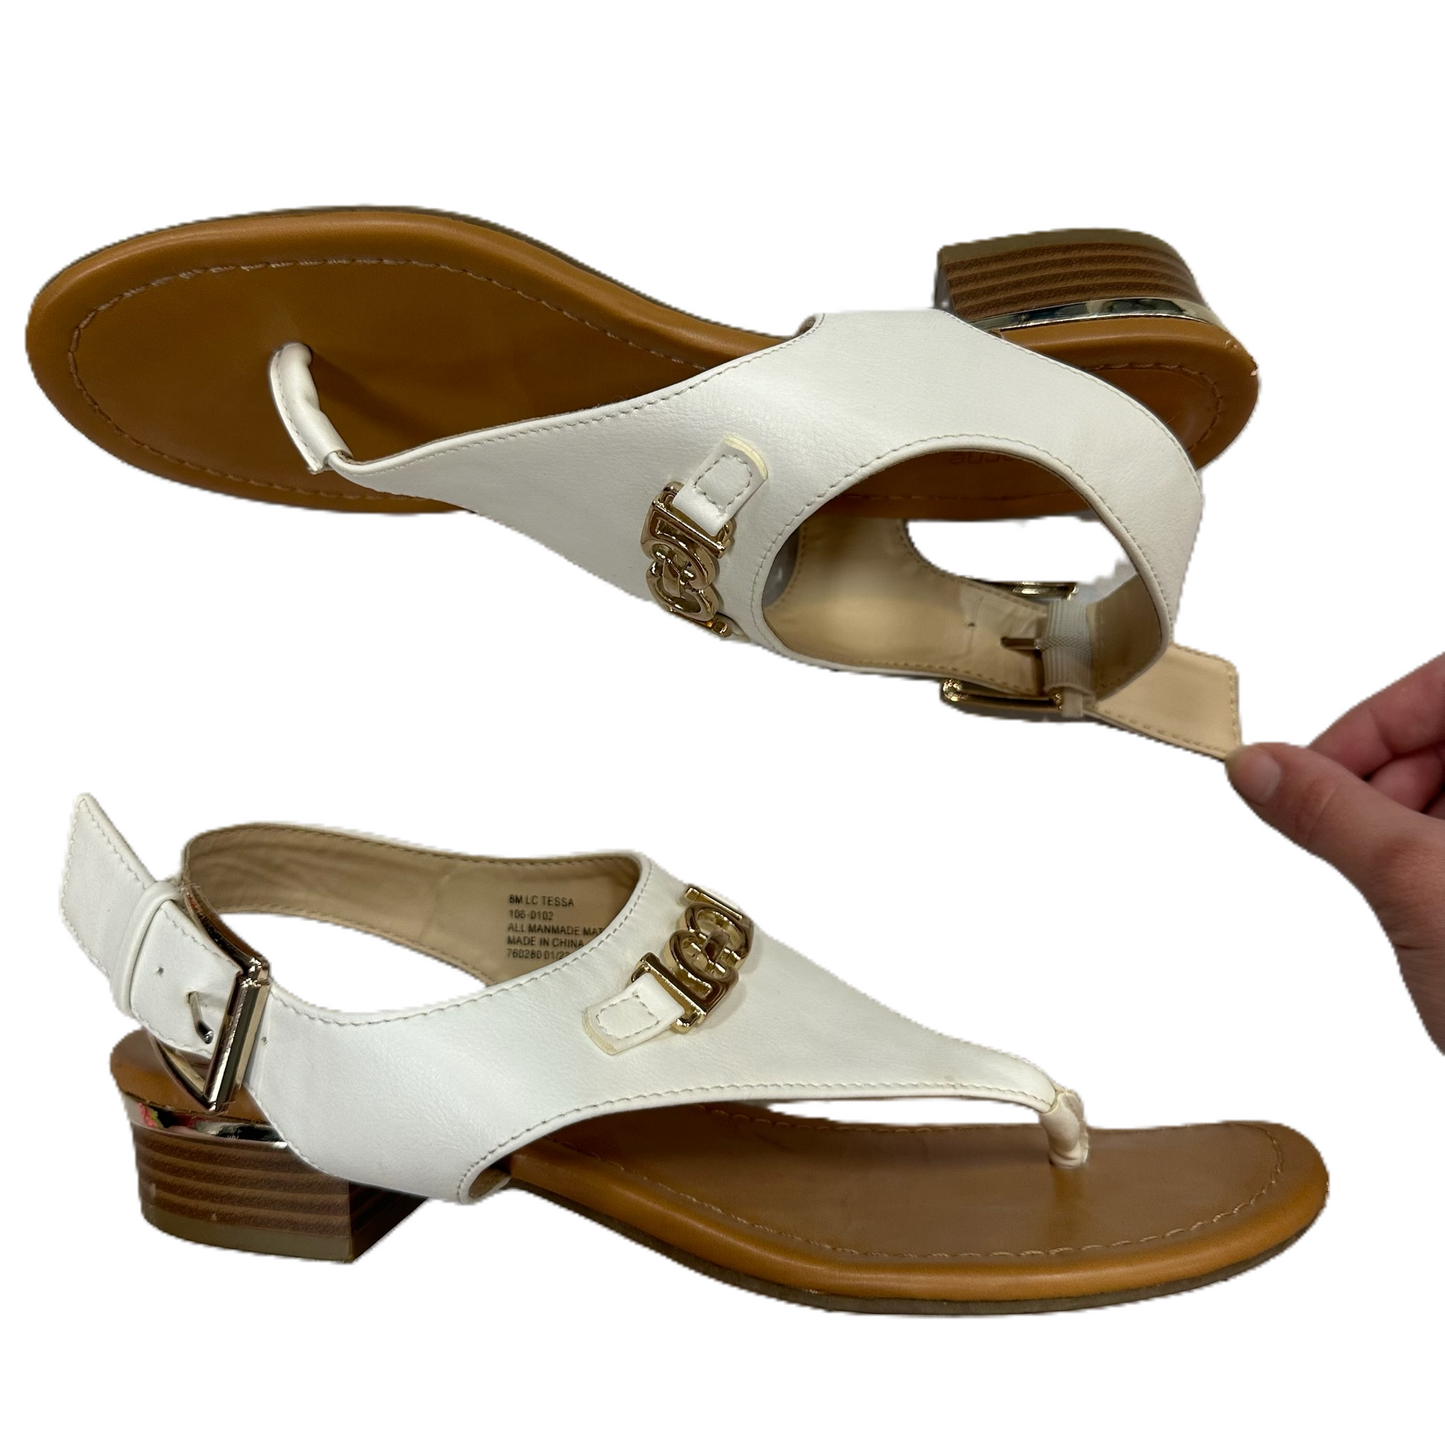 White Sandals Flats By Liz Claiborne, Size: 8